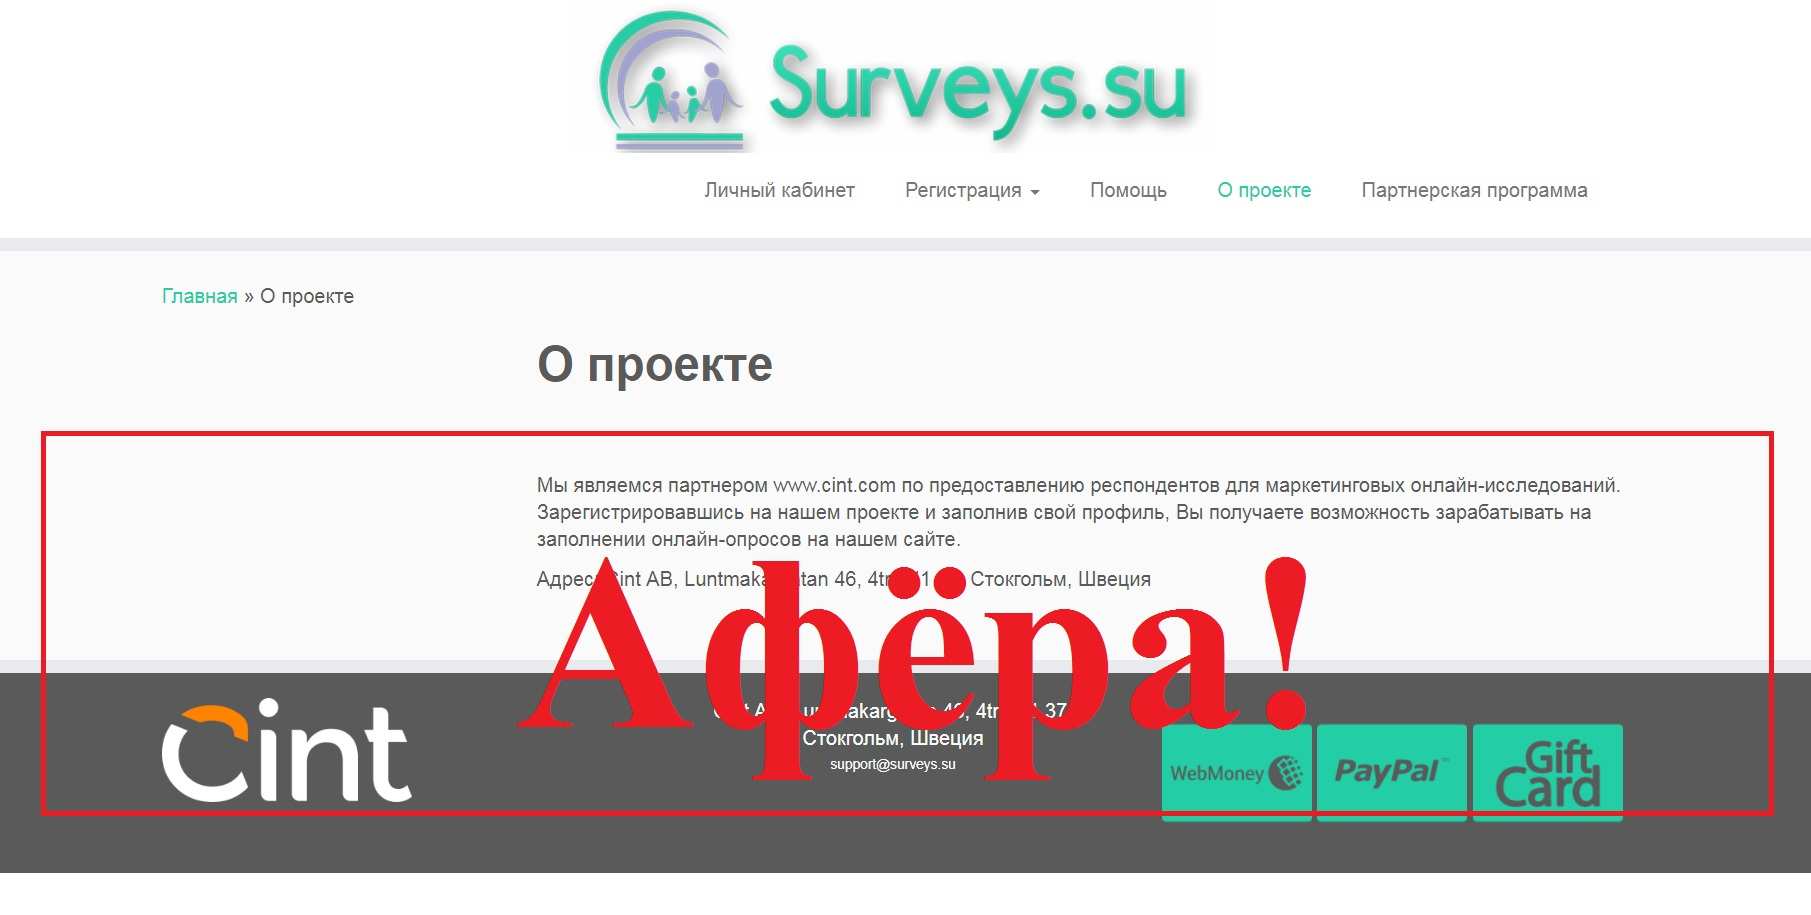 Опросник Surveys – реальные отзывы о surveys.su